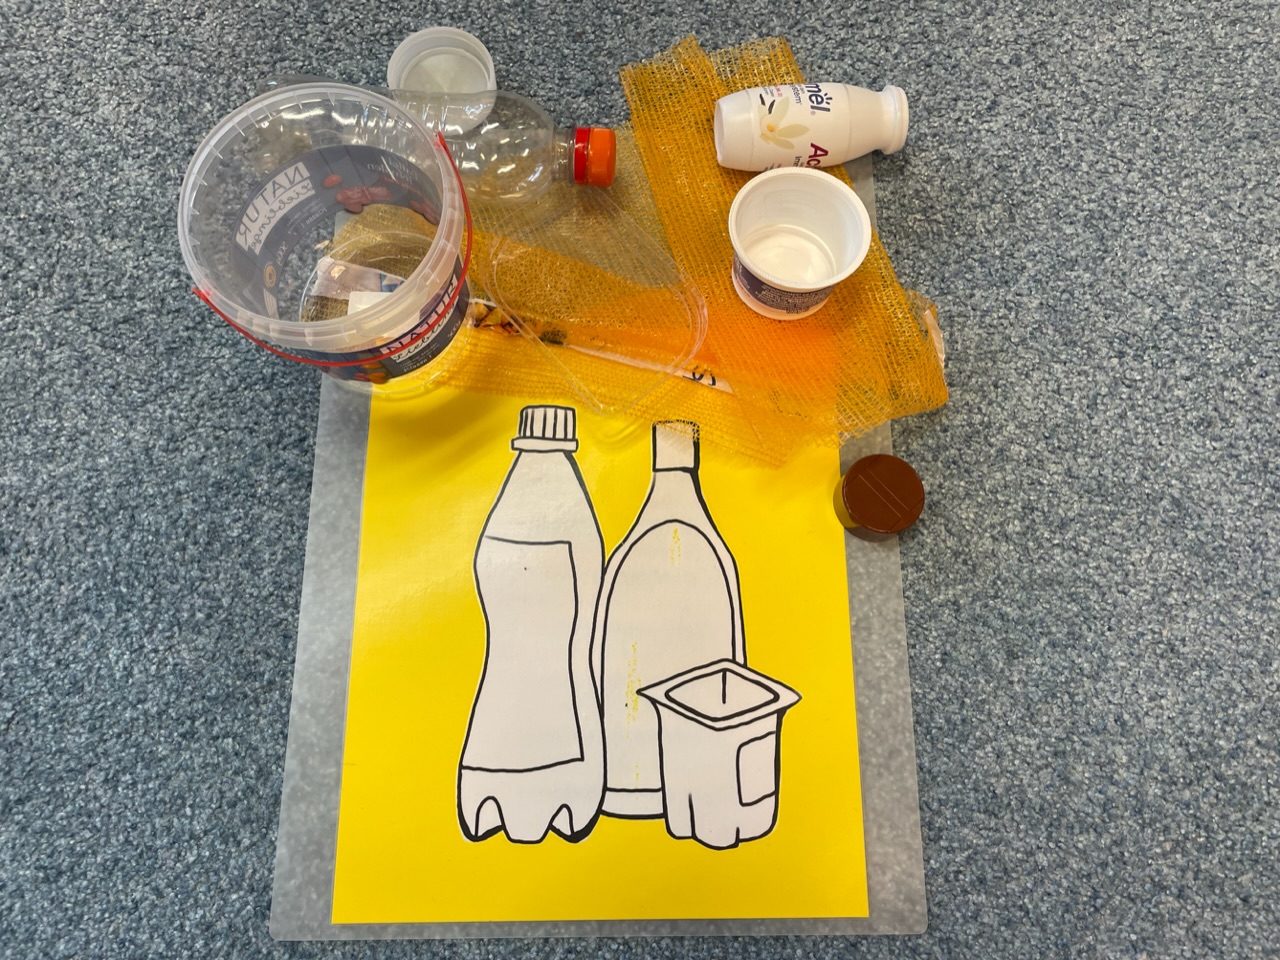 Bild zum Schritt 14 für das Bastel- und DIY-Abenteuer für Kinder: 'Plastikmüll:   Z.B. Joghurtbecher, Becher vom Trinkjoghurt,  Plastikeimer...'